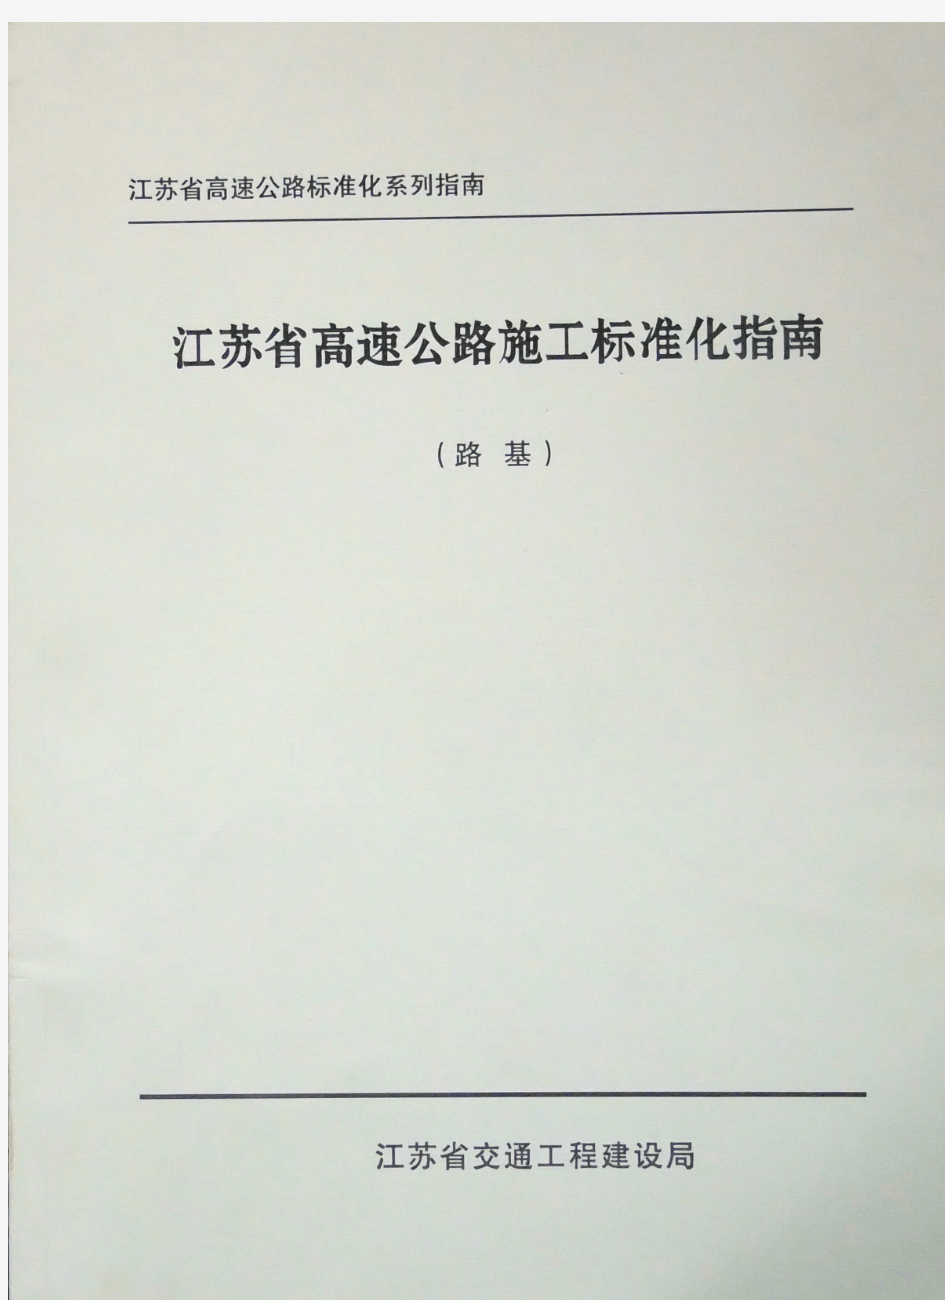 江苏省高速公路施工标准化指南(路基)